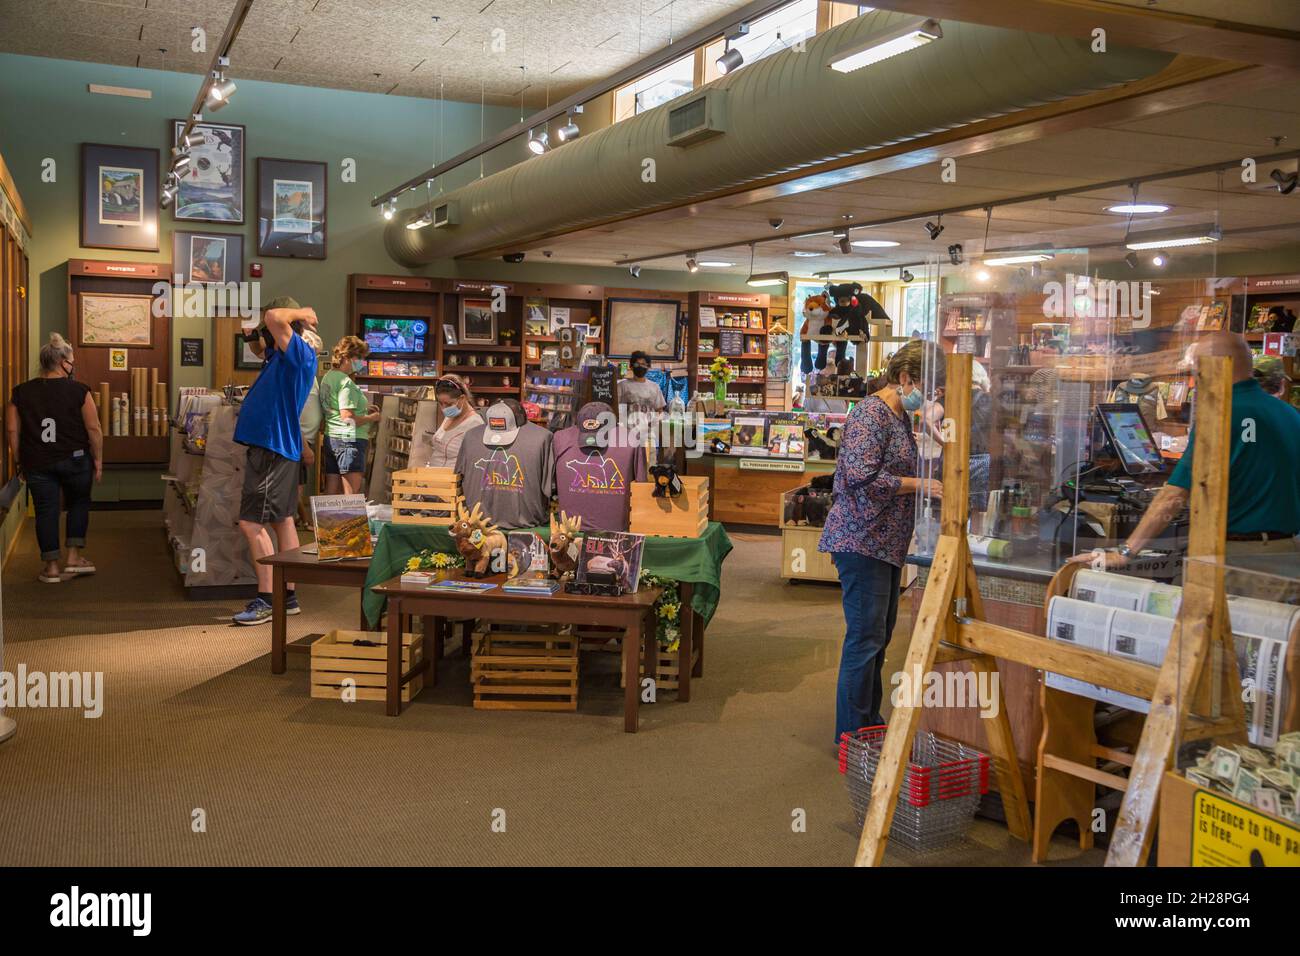 Fai shopping all'interno del centro visitatori Oconaluftee presso il Great Smoky Mountains National Park vicino a Cherokee, North Carolina Foto Stock